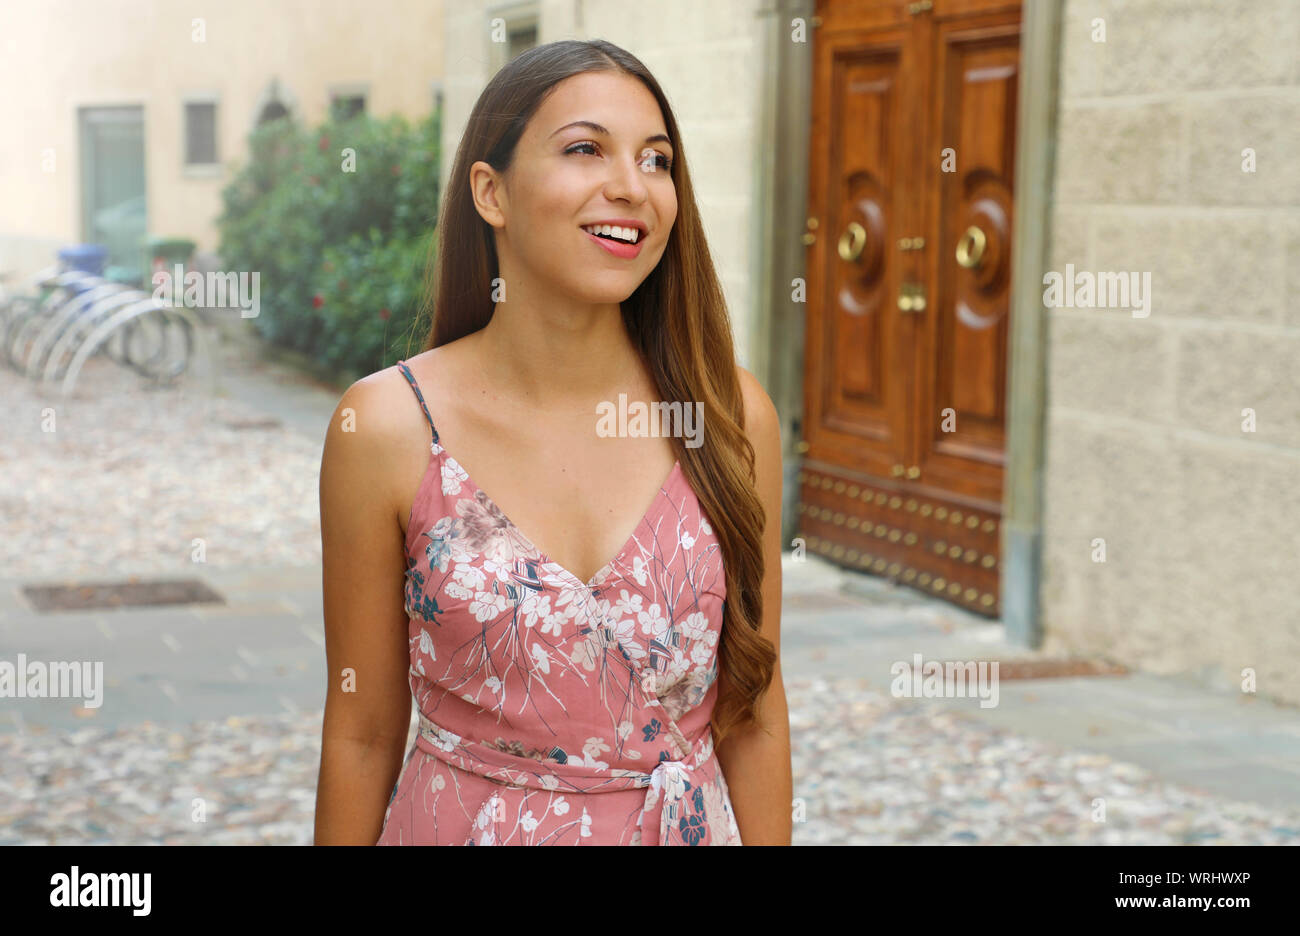 Very beautiful woman in italian